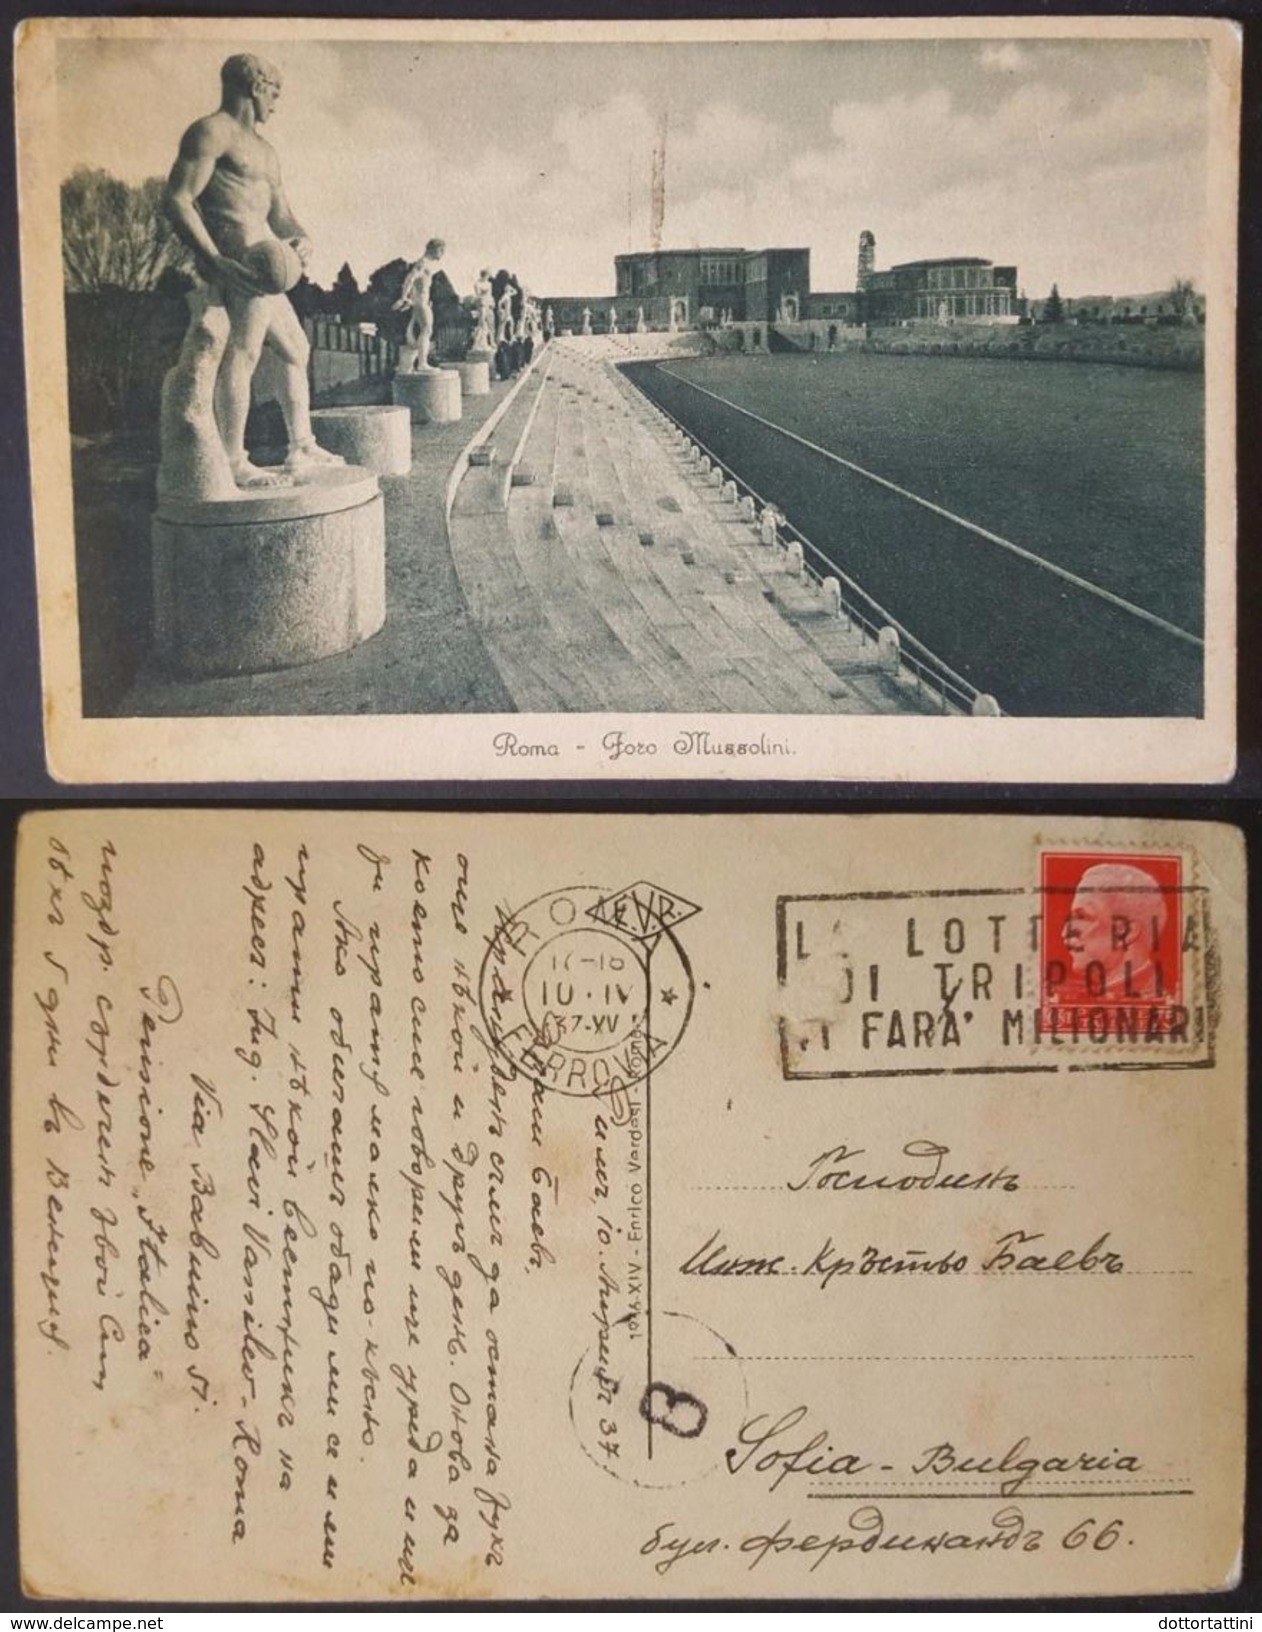 ROMA - FORO MUSSOLINI (STADIO DEI MARMI) - Annullo Targhetta Lotteria Di Tripoli Vg 1937 - Stadi & Strutture Sportive